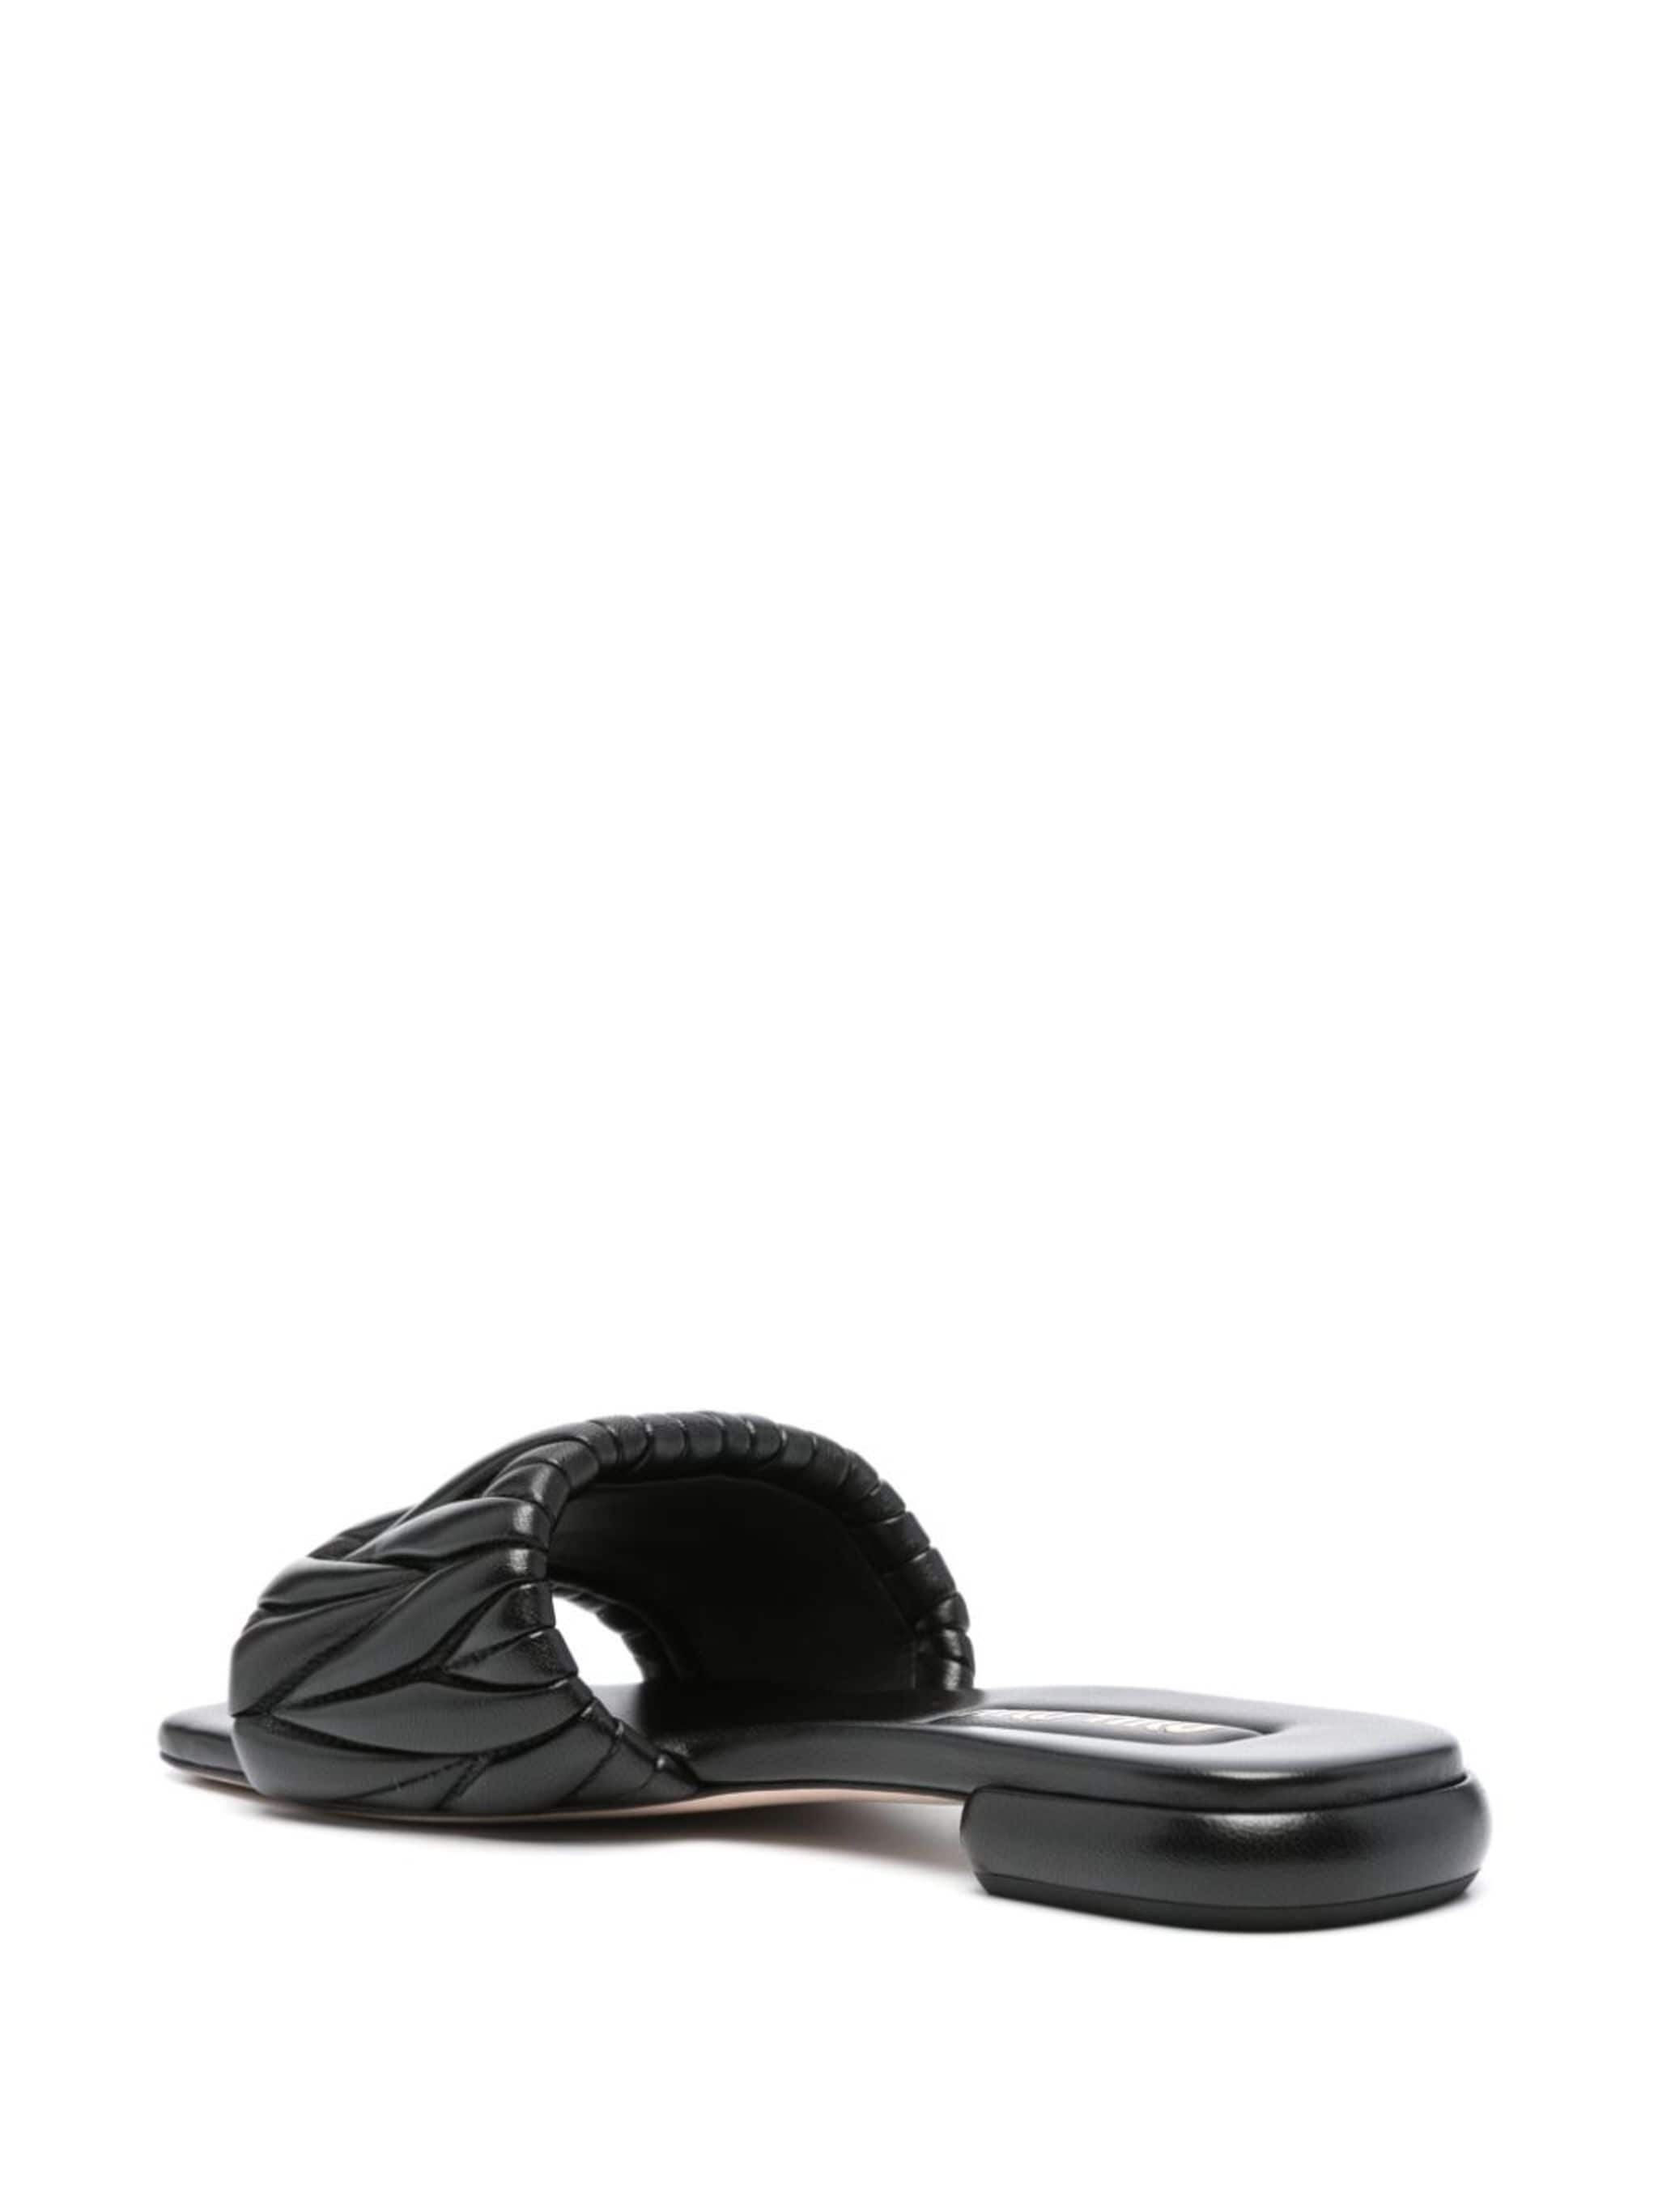 matelassé leather sandals - 3